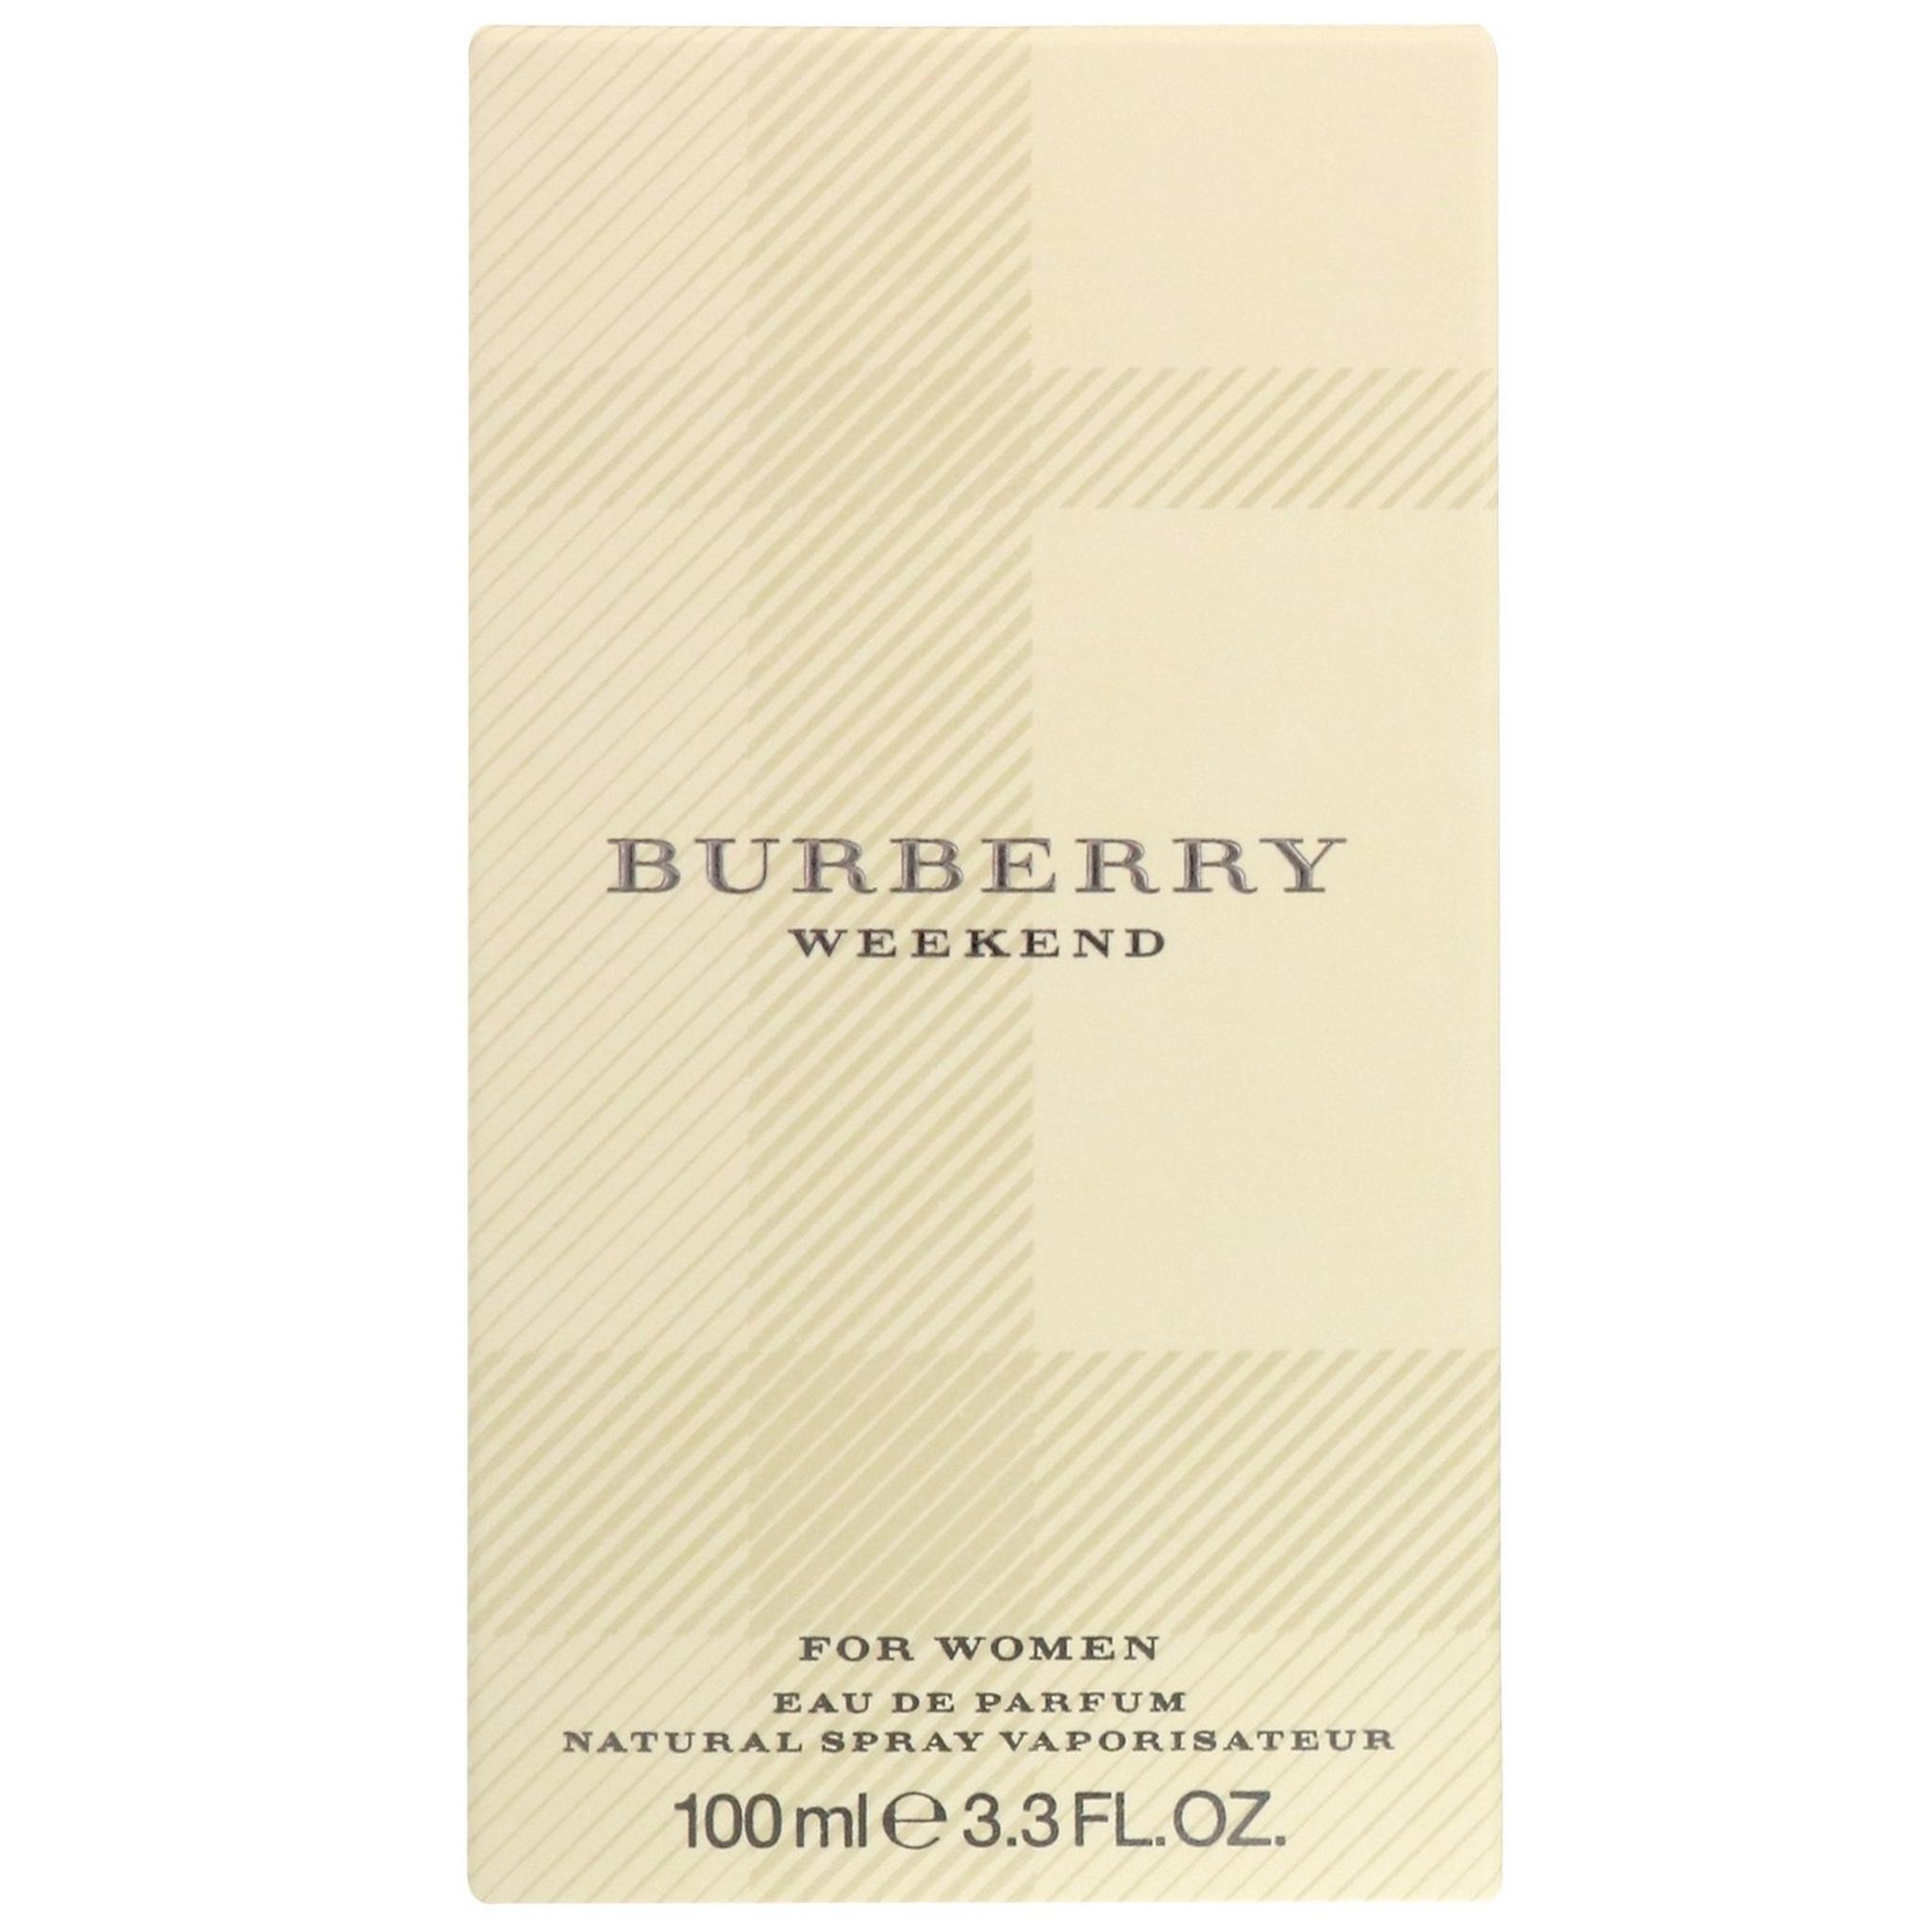 Burberry Weekend For Women 100 ml Eau de Parfum